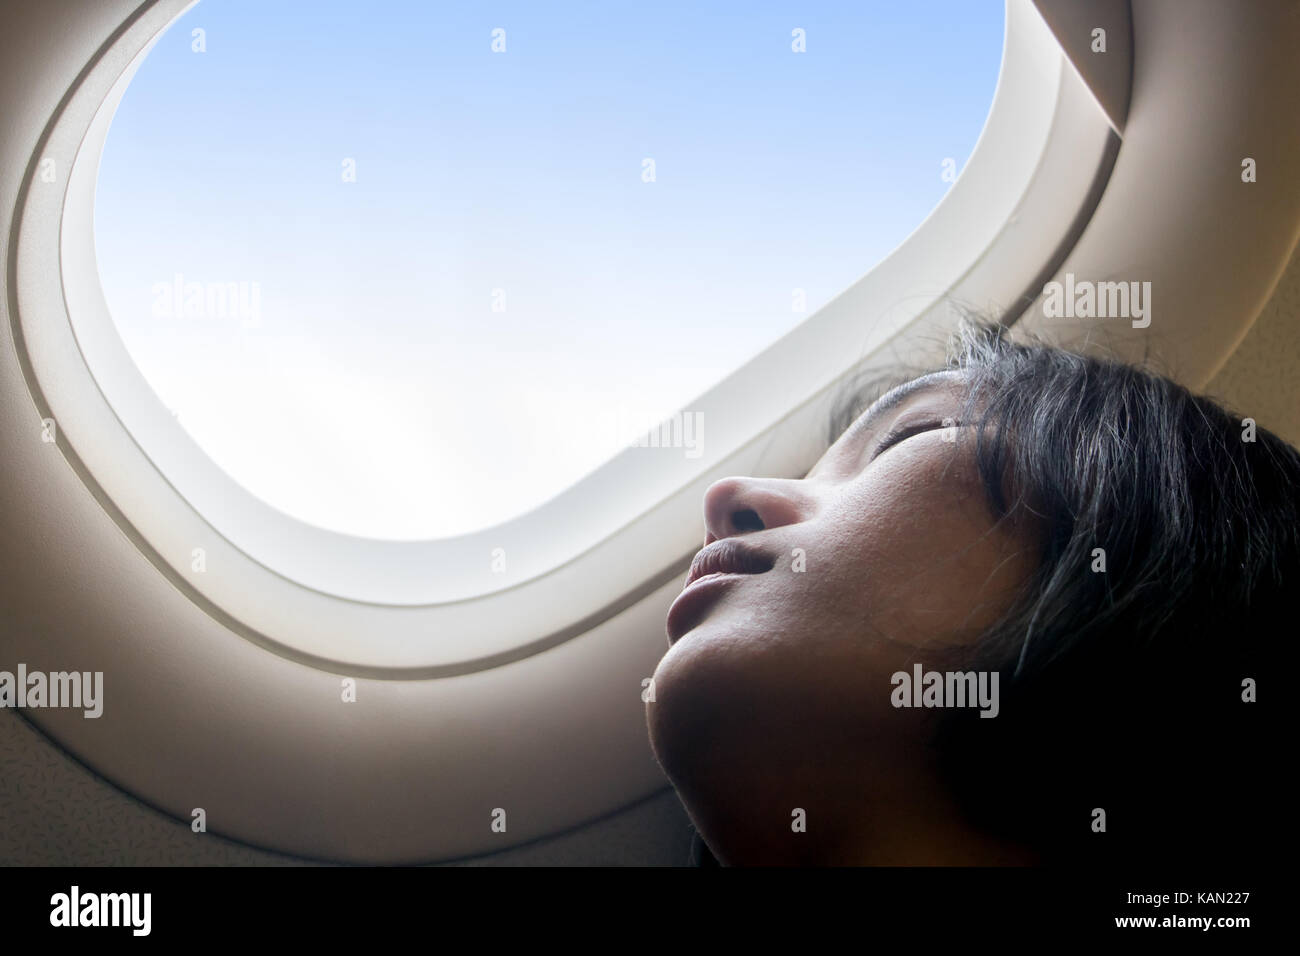 Portrait d'une jeune fille se reposant sur un avion. Une jeune femme dormant dans une fenêtre d'un avion en vol. rêver dans les nuages. Banque D'Images